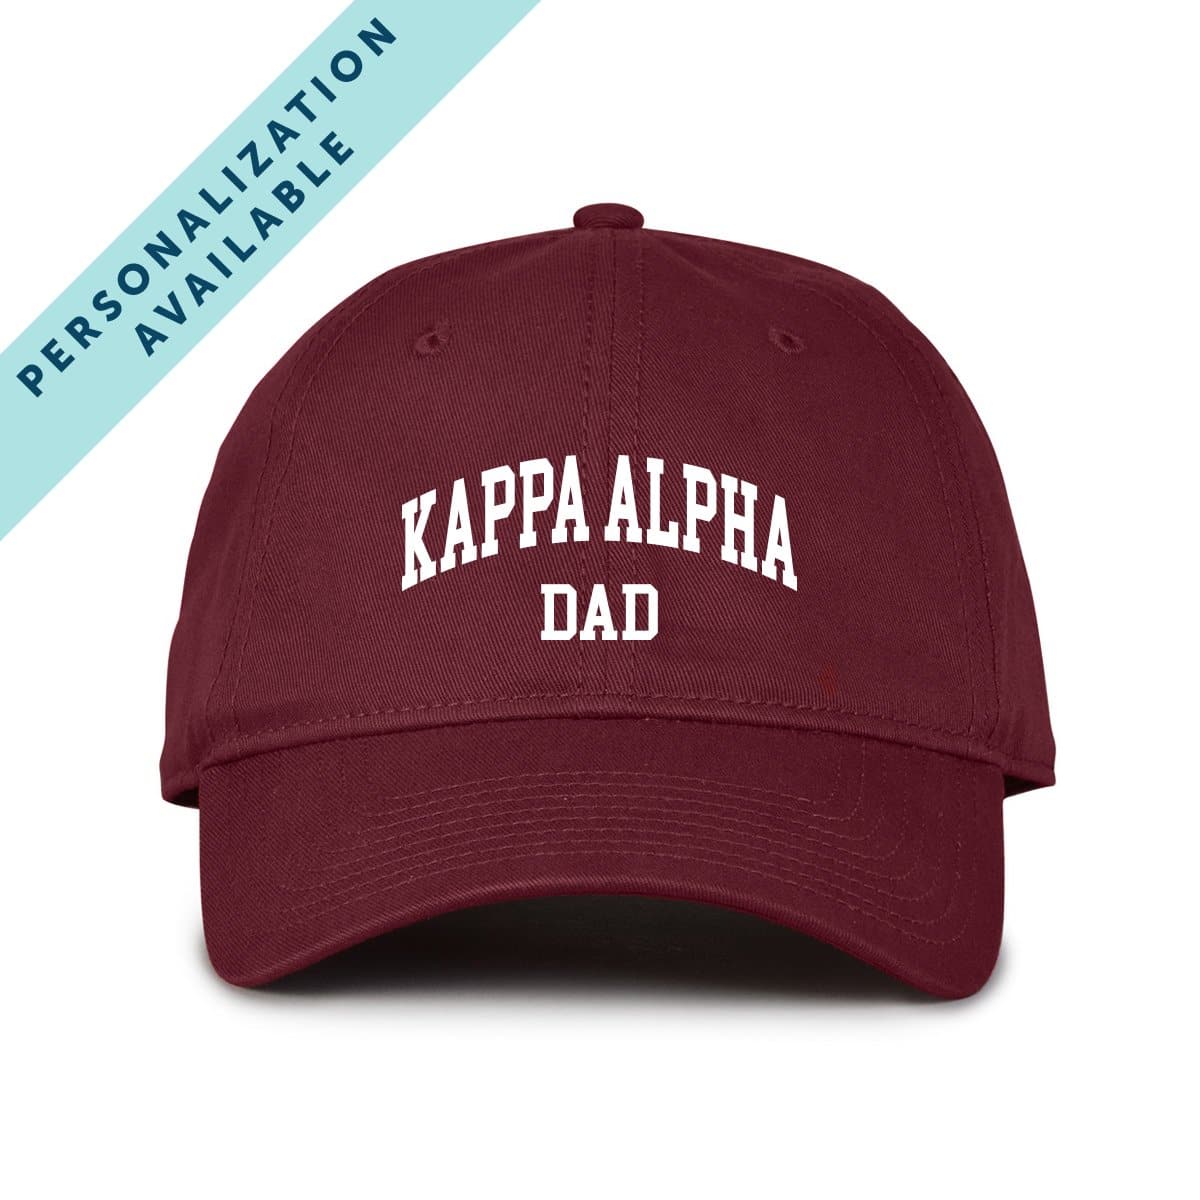 Kappa Alpha Dad Cap Order Store – Official Kappa Alpha